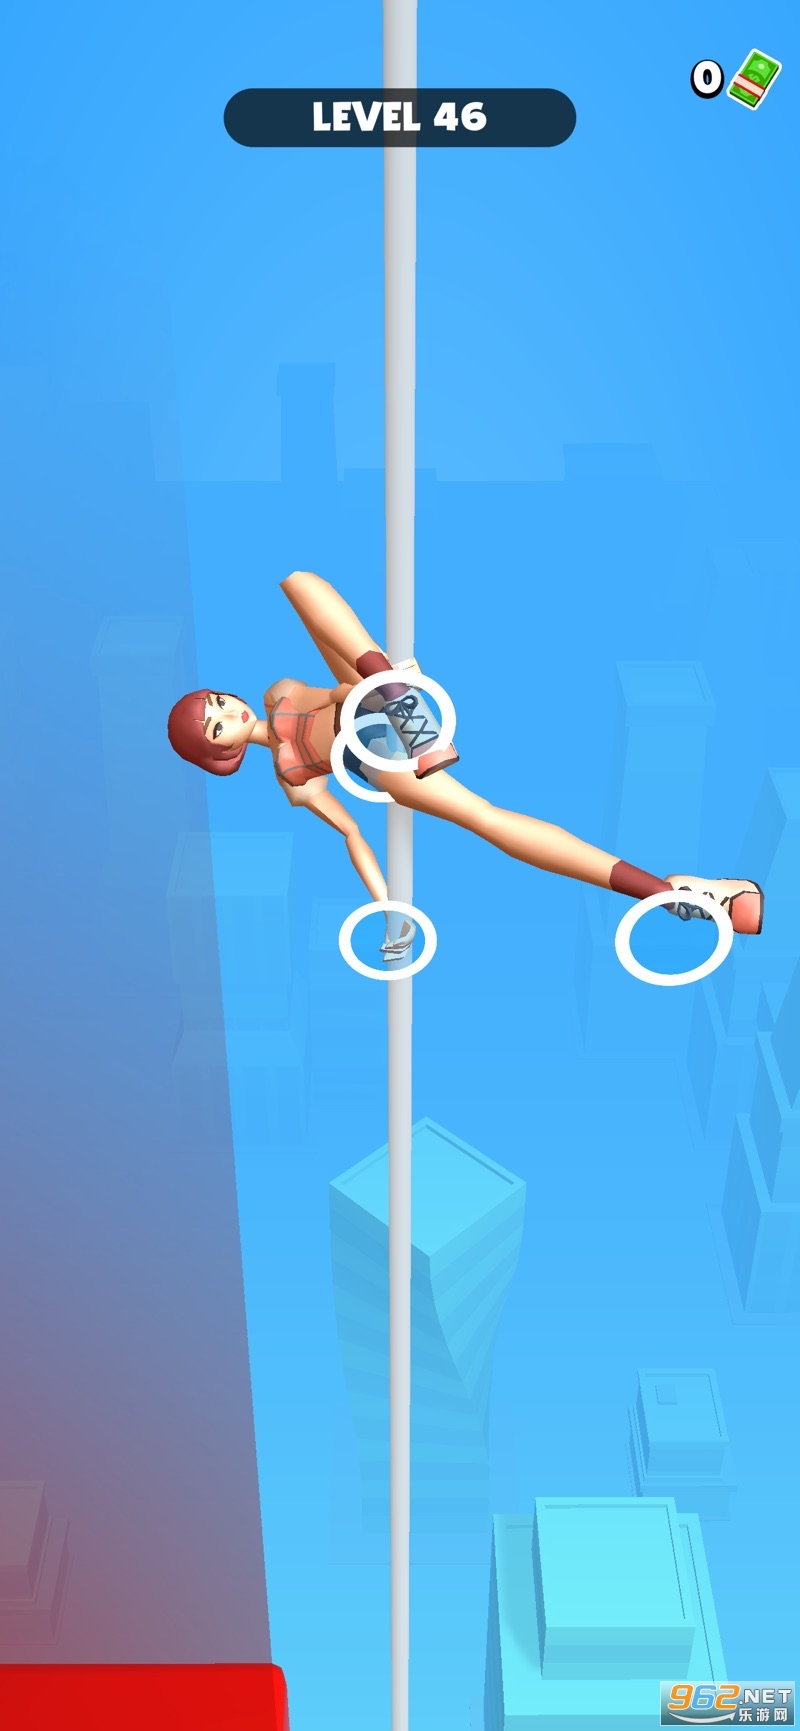 钢管舞3D游戏苹果版最新版截图3